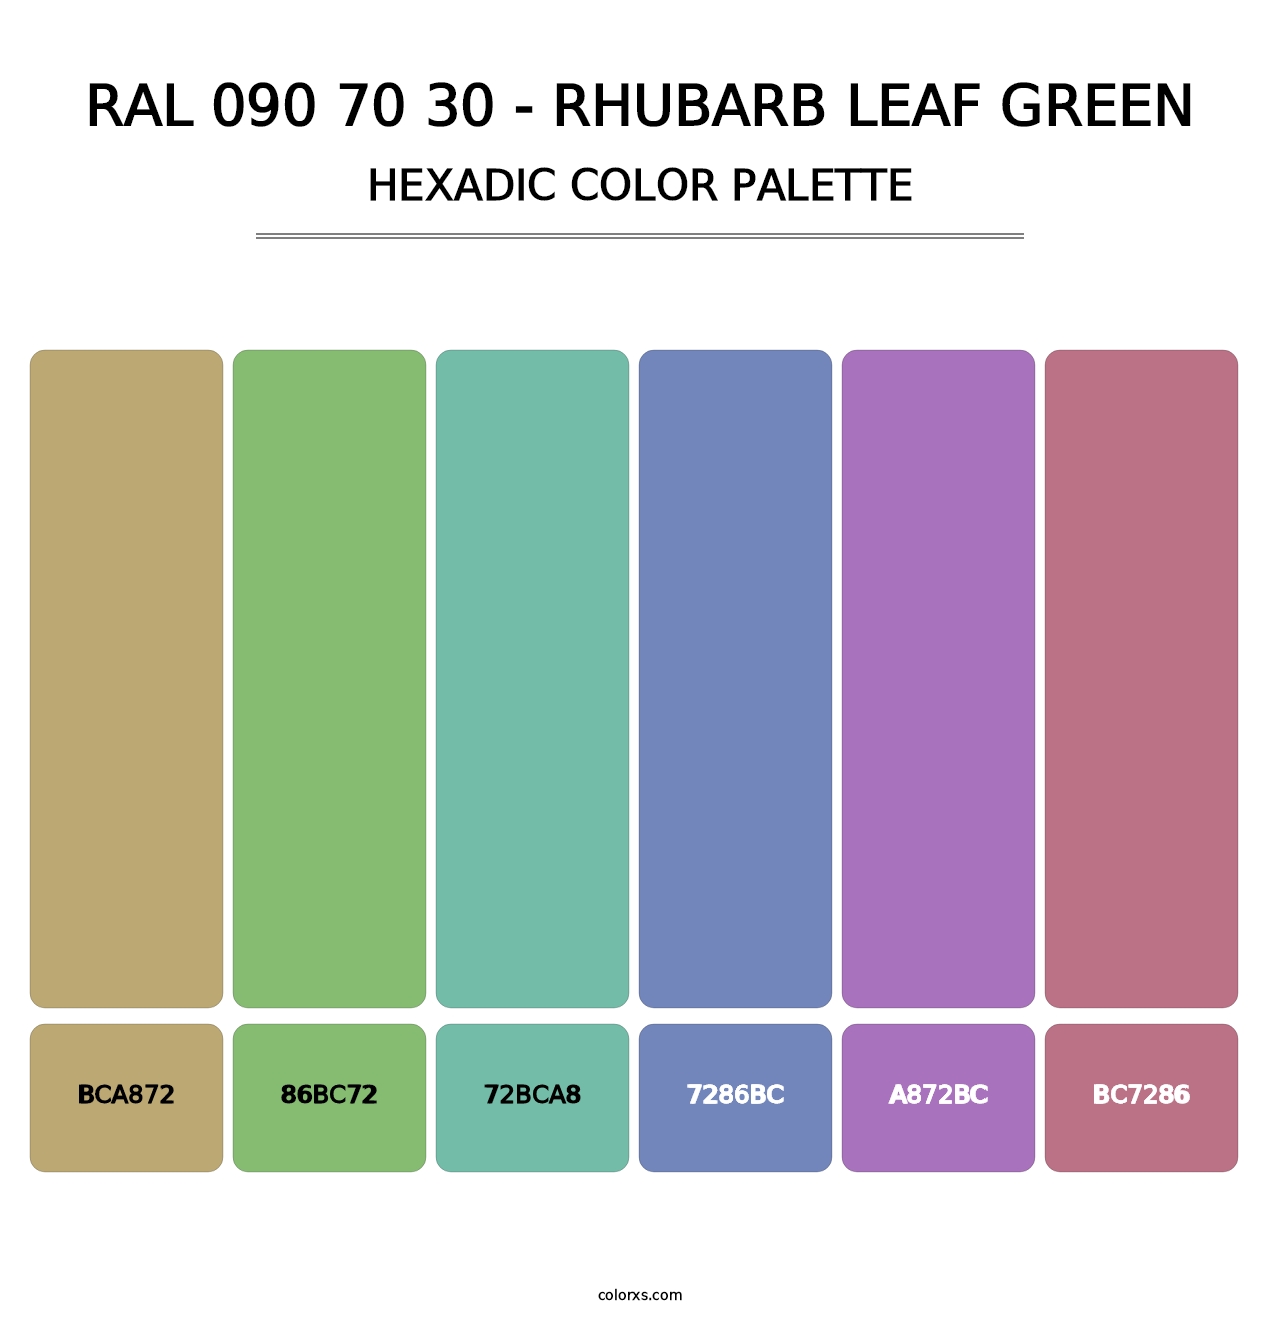 RAL 090 70 30 - Rhubarb Leaf Green - Hexadic Color Palette